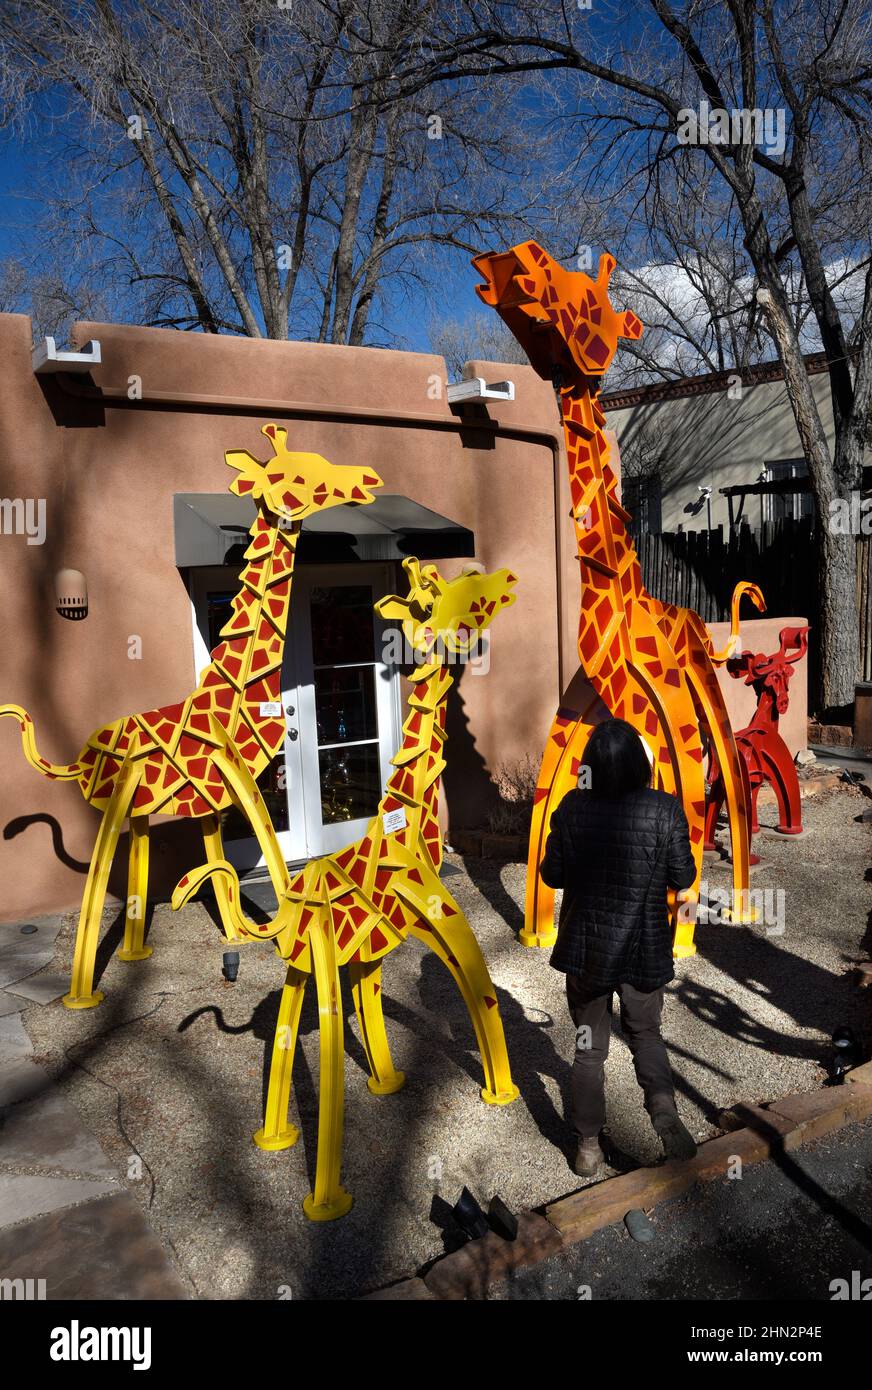 Un touriste regarde les sculptures d'animaux colorées de Fredrick Prescott à vendre dans une galerie d'art de Santa Fe, Nouveau-Mexique. Banque D'Images